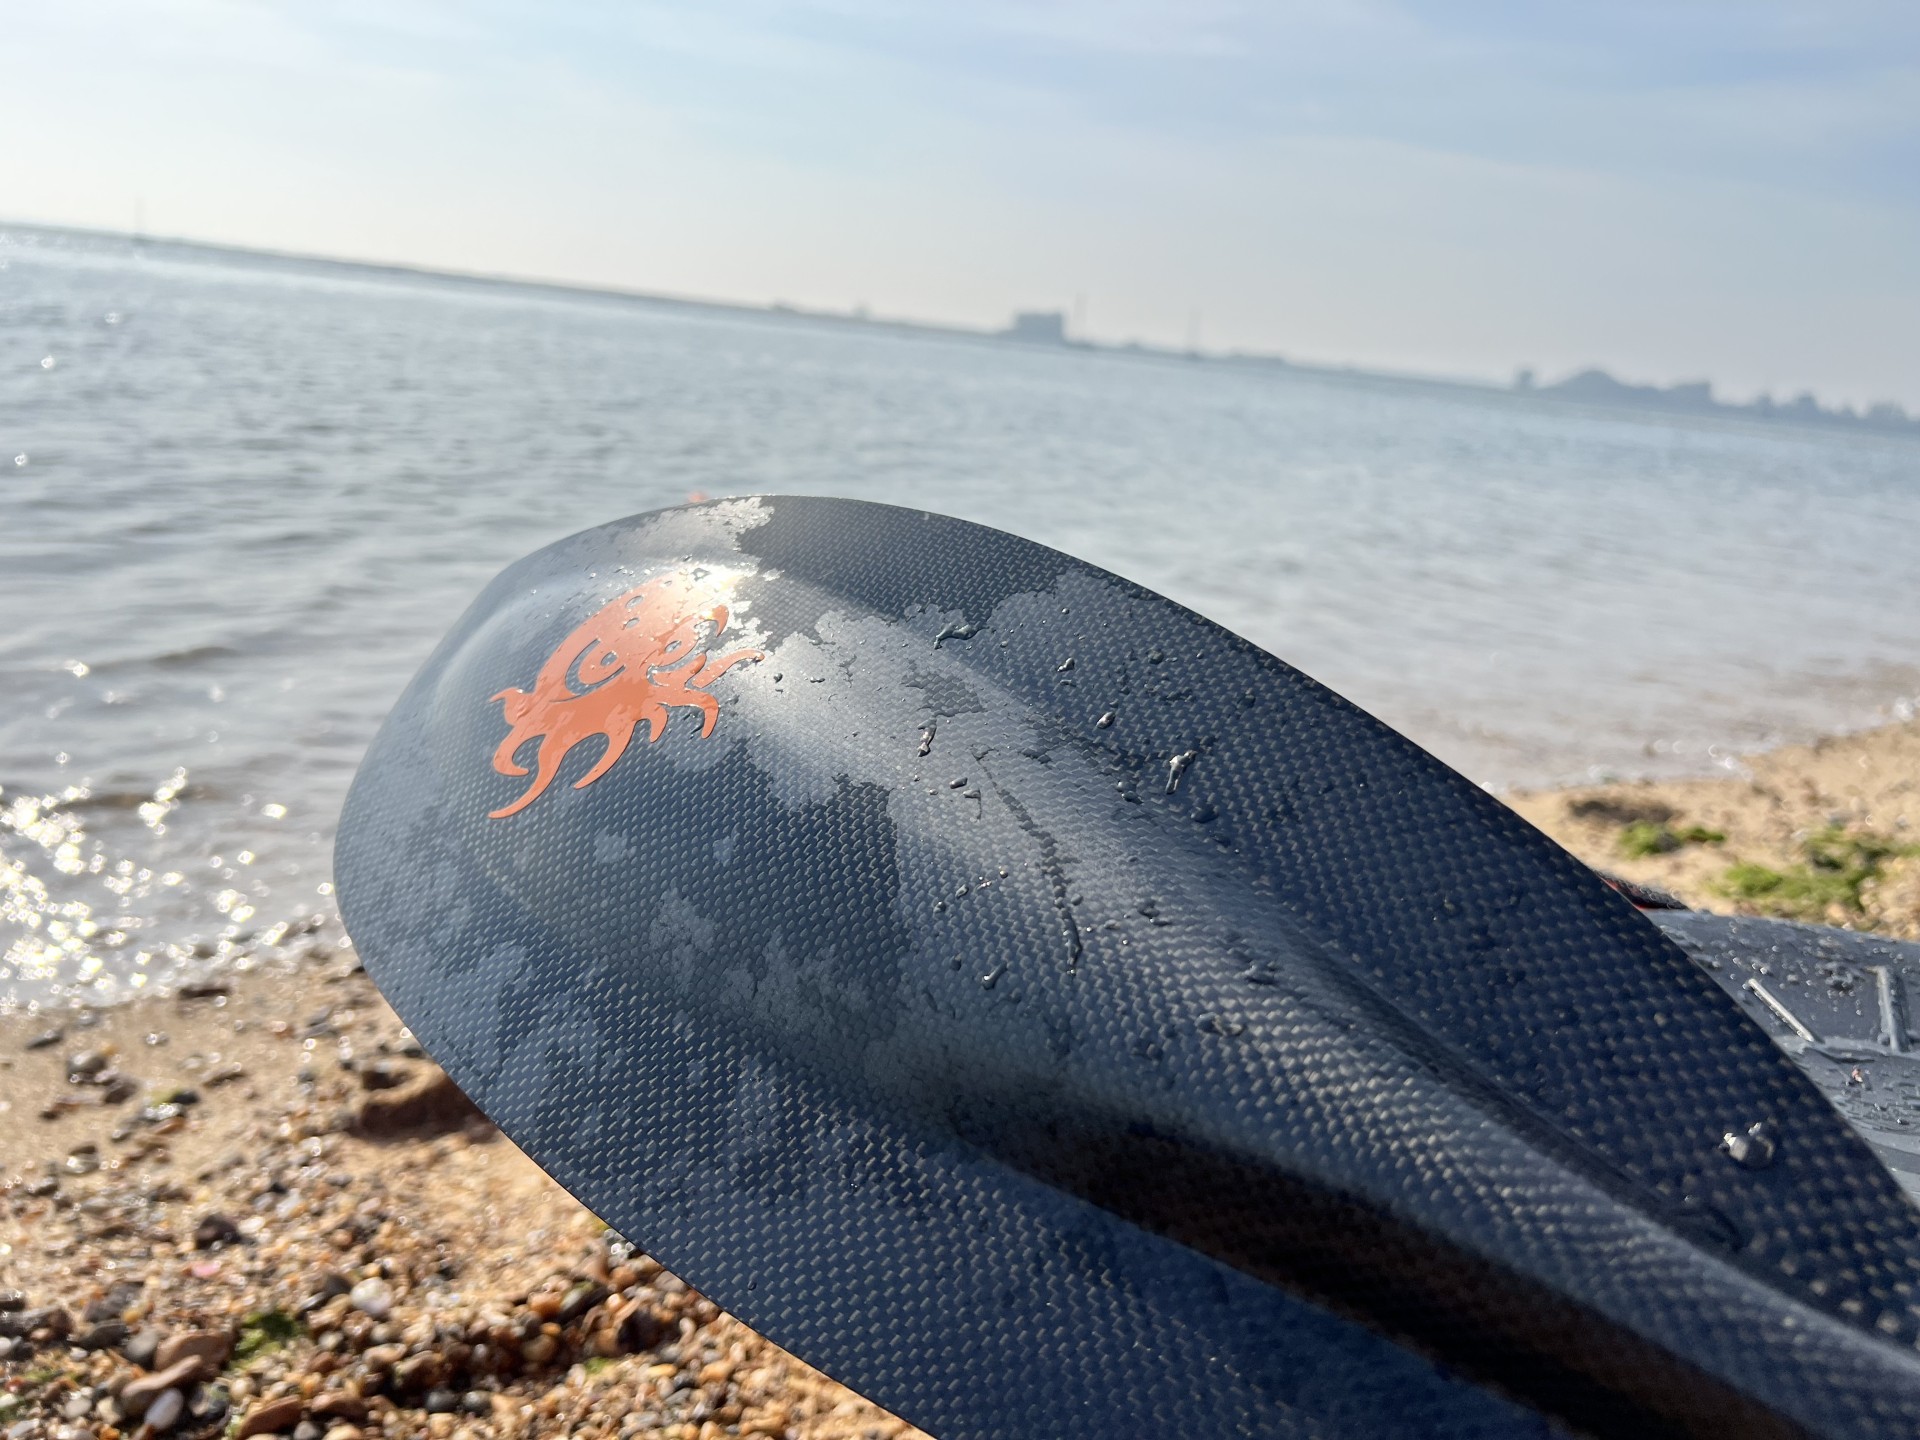 Carbon fibre crankshaft sea kayak paddle from www.nomadseakayaking.co.uk